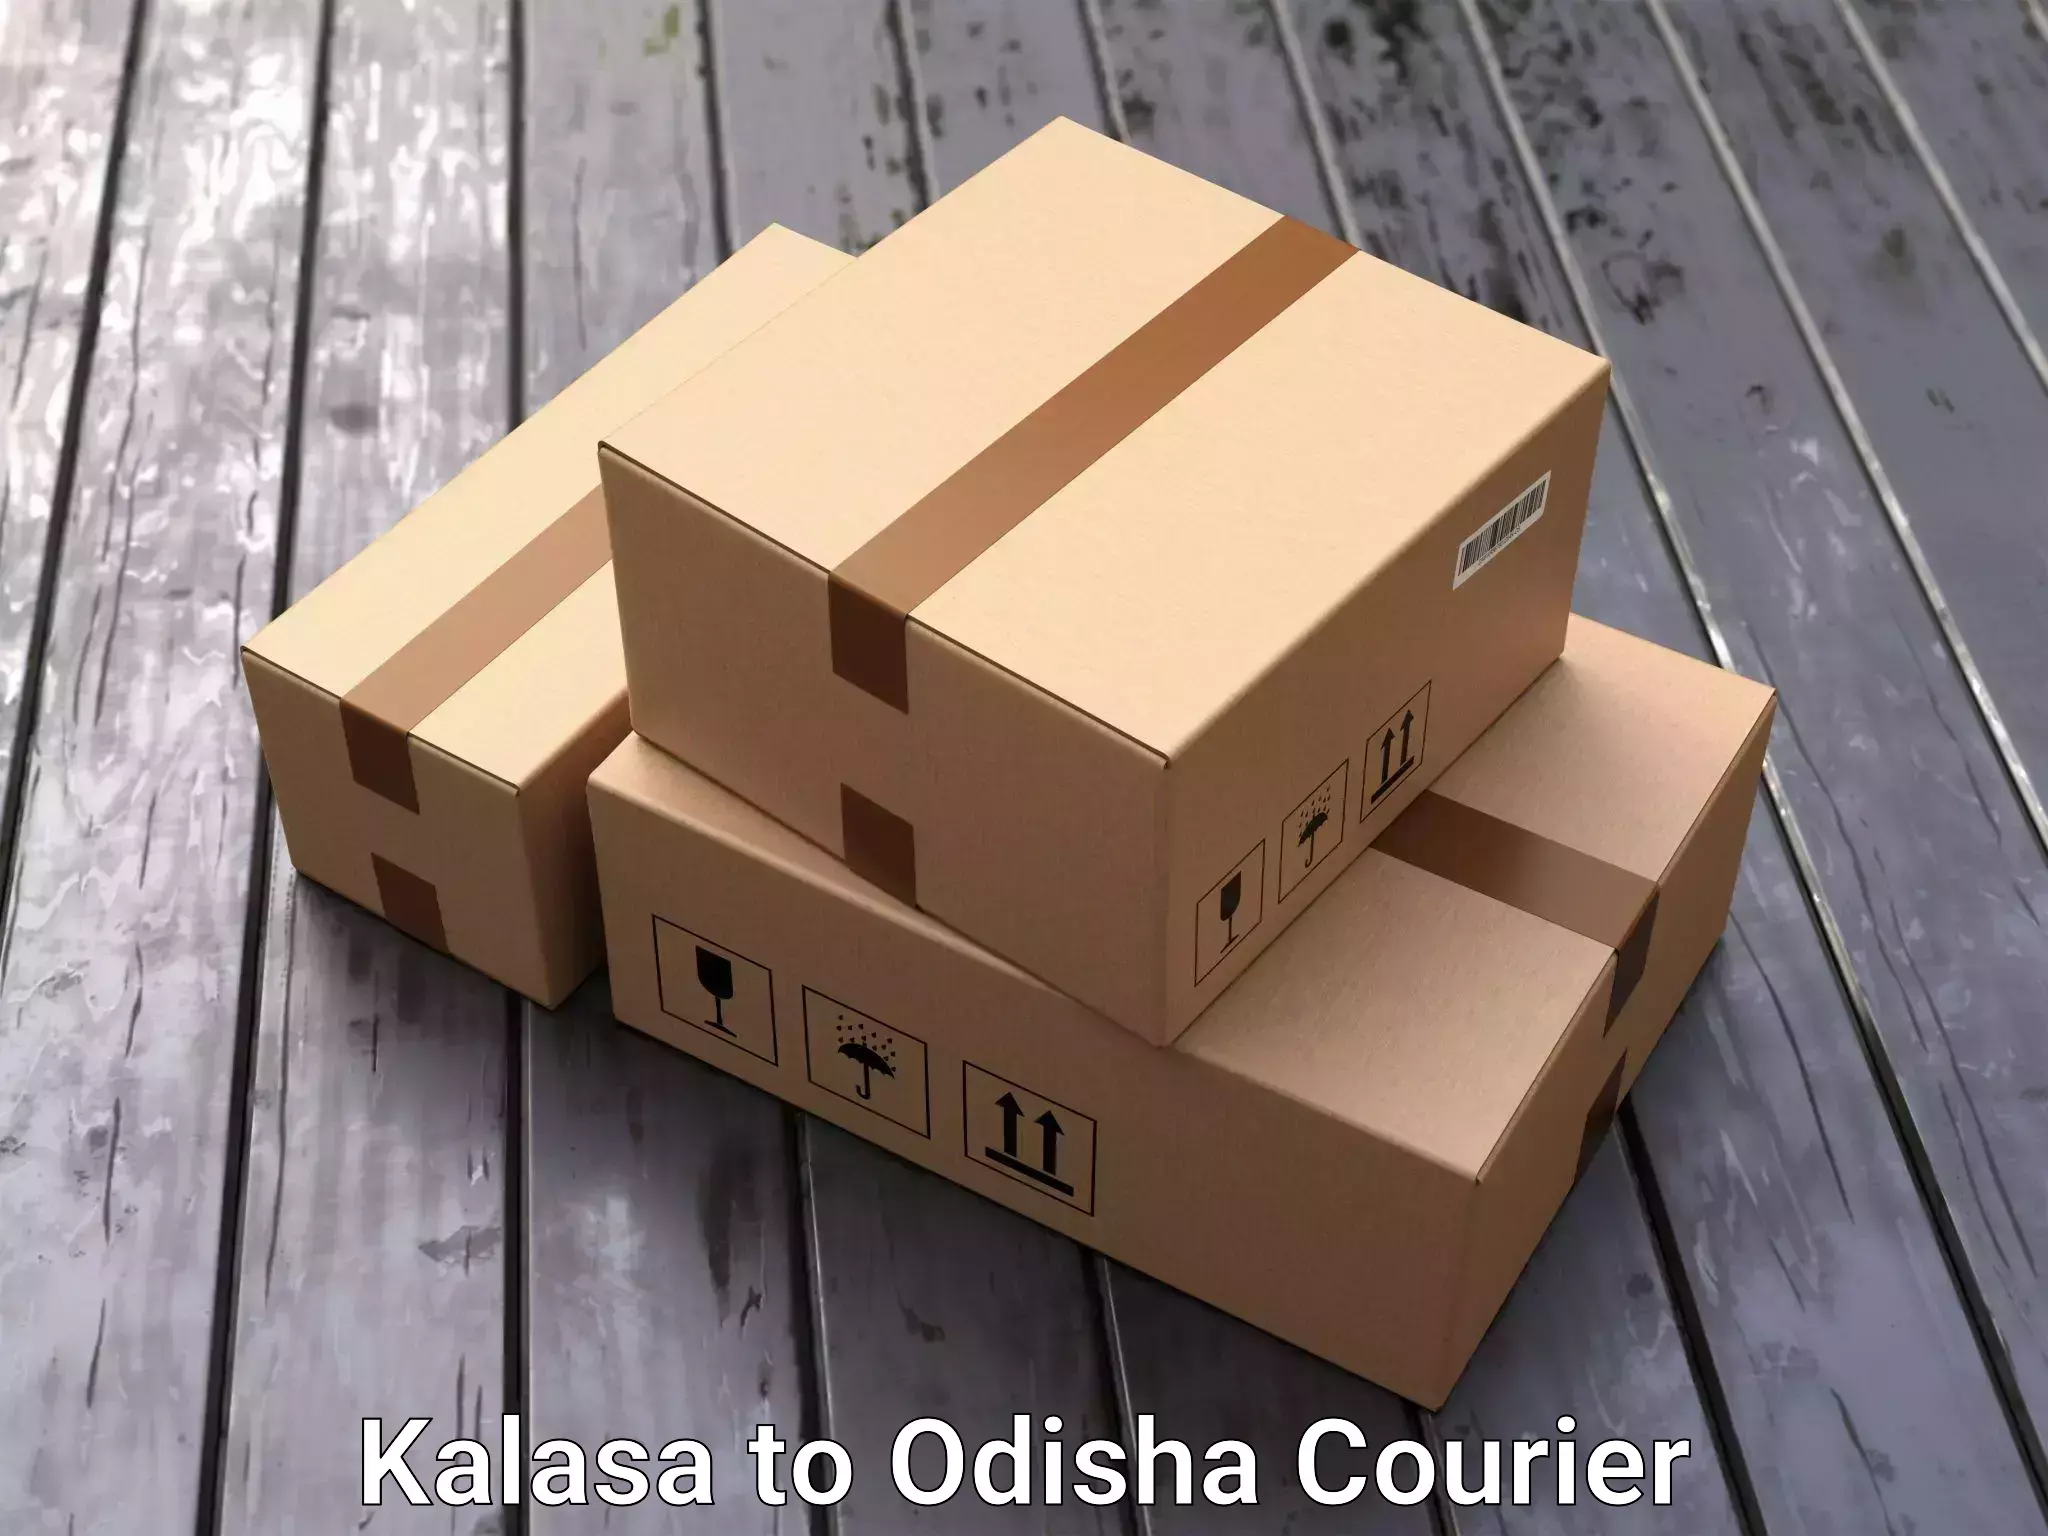 Moving and storage services Kalasa to Bhubaneswar